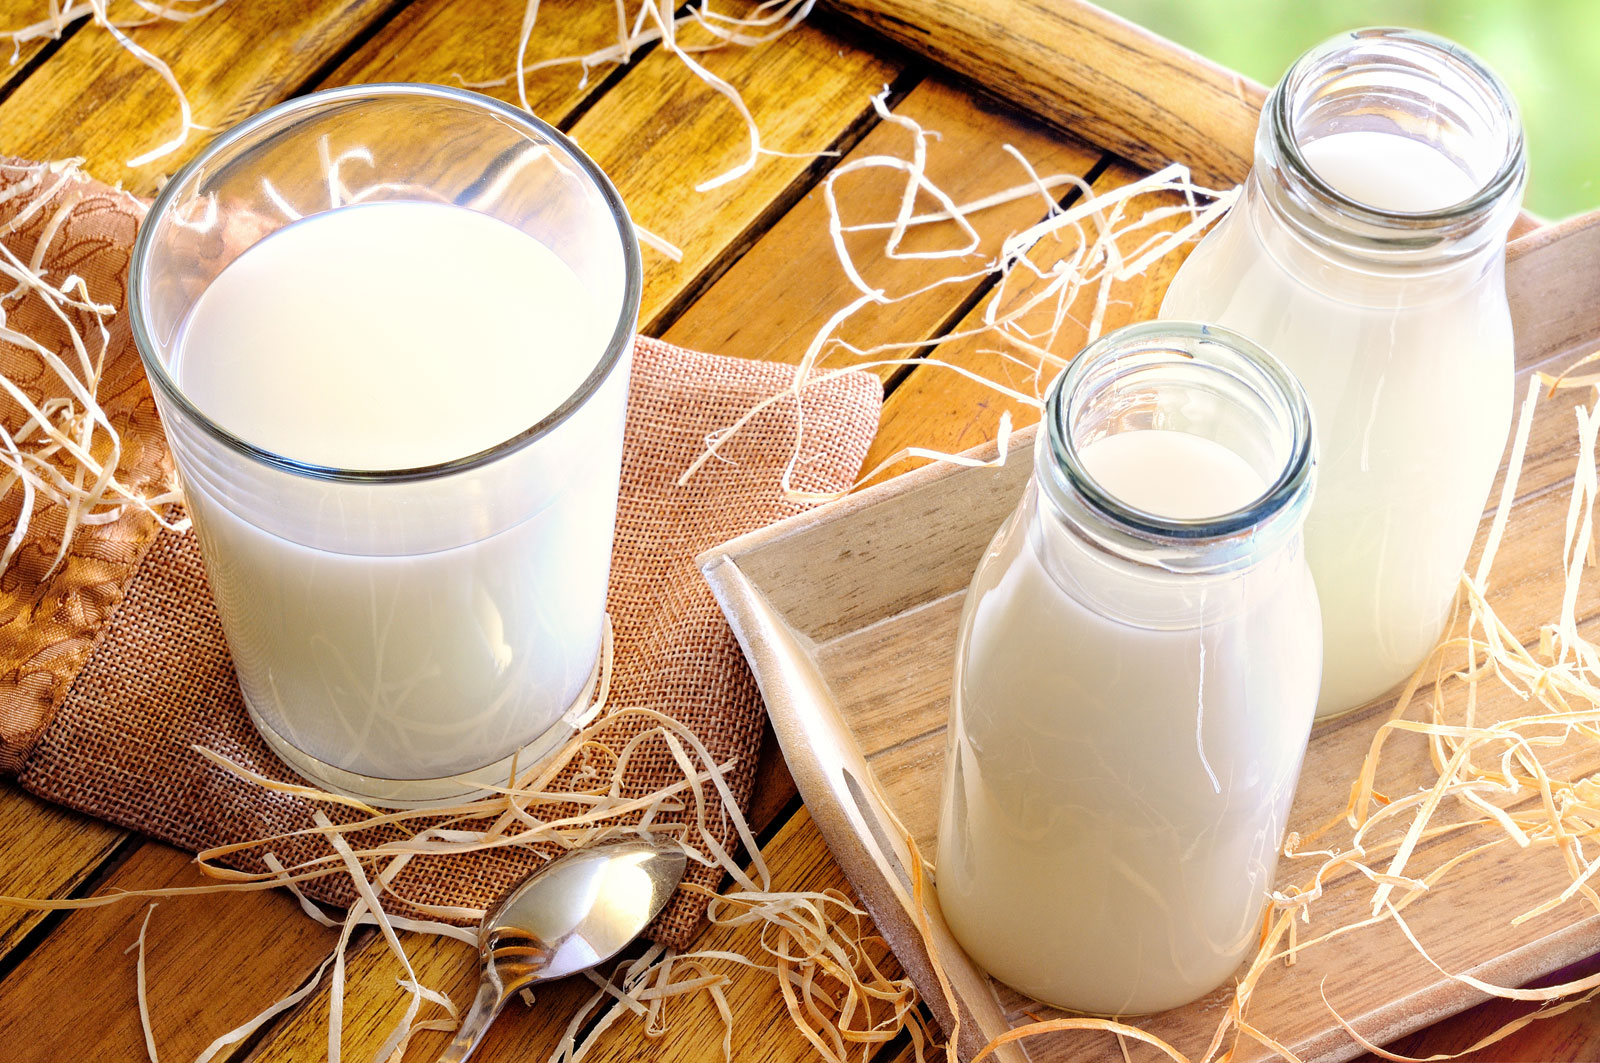 Пробы сырого коровьего молока указали на нарушение гигиены при производстве